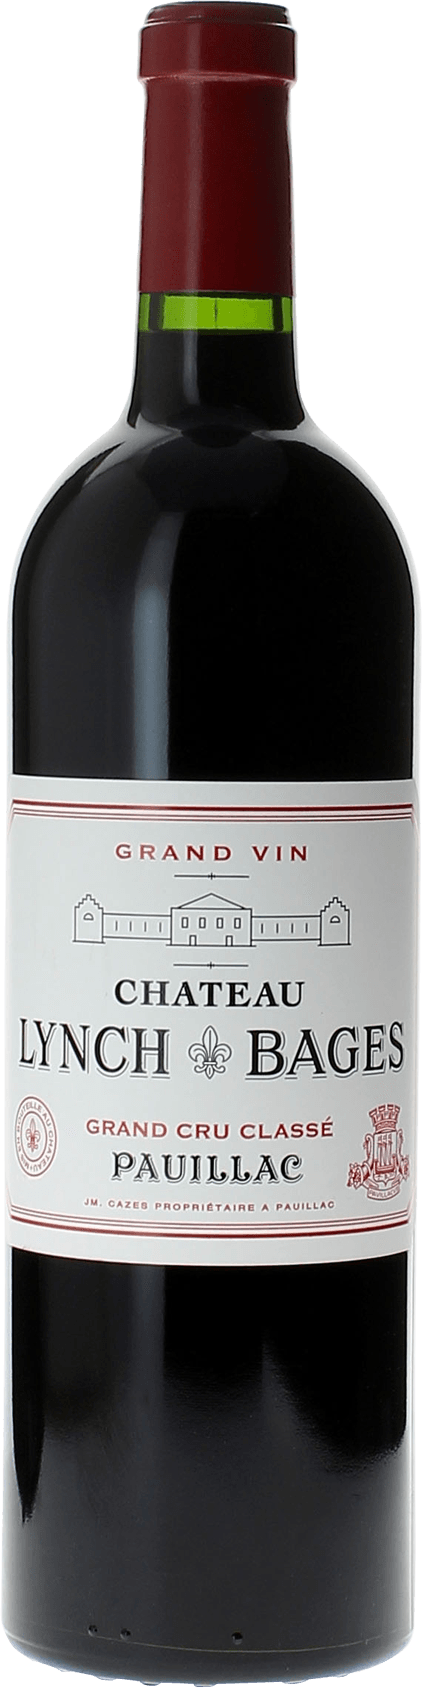 Lynch bages 1988 5 me Grand cru class Pauillac, Bordeaux rouge